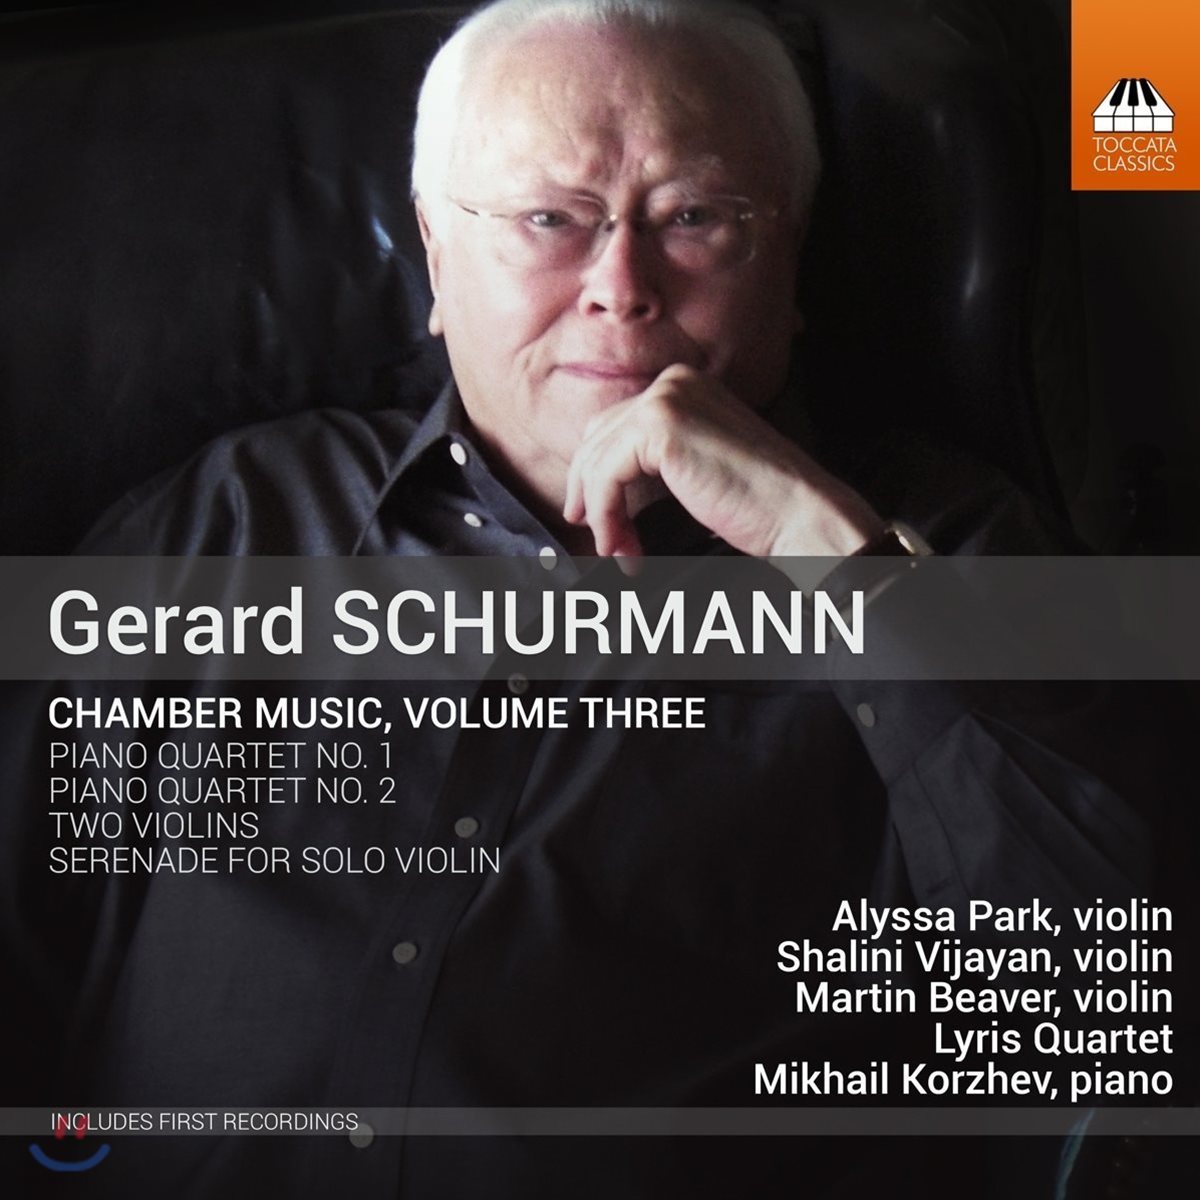 Lyris Quartet 제라드 셔먼: 실내악 작품 3집 - 피아노 사중주 1 & 2번, 두 대의 바이올린, 무반주 바이올린 세레나데 (Gerard Schurmann: Chamber Music Vol.3 - Piano Quartets, Serenade)